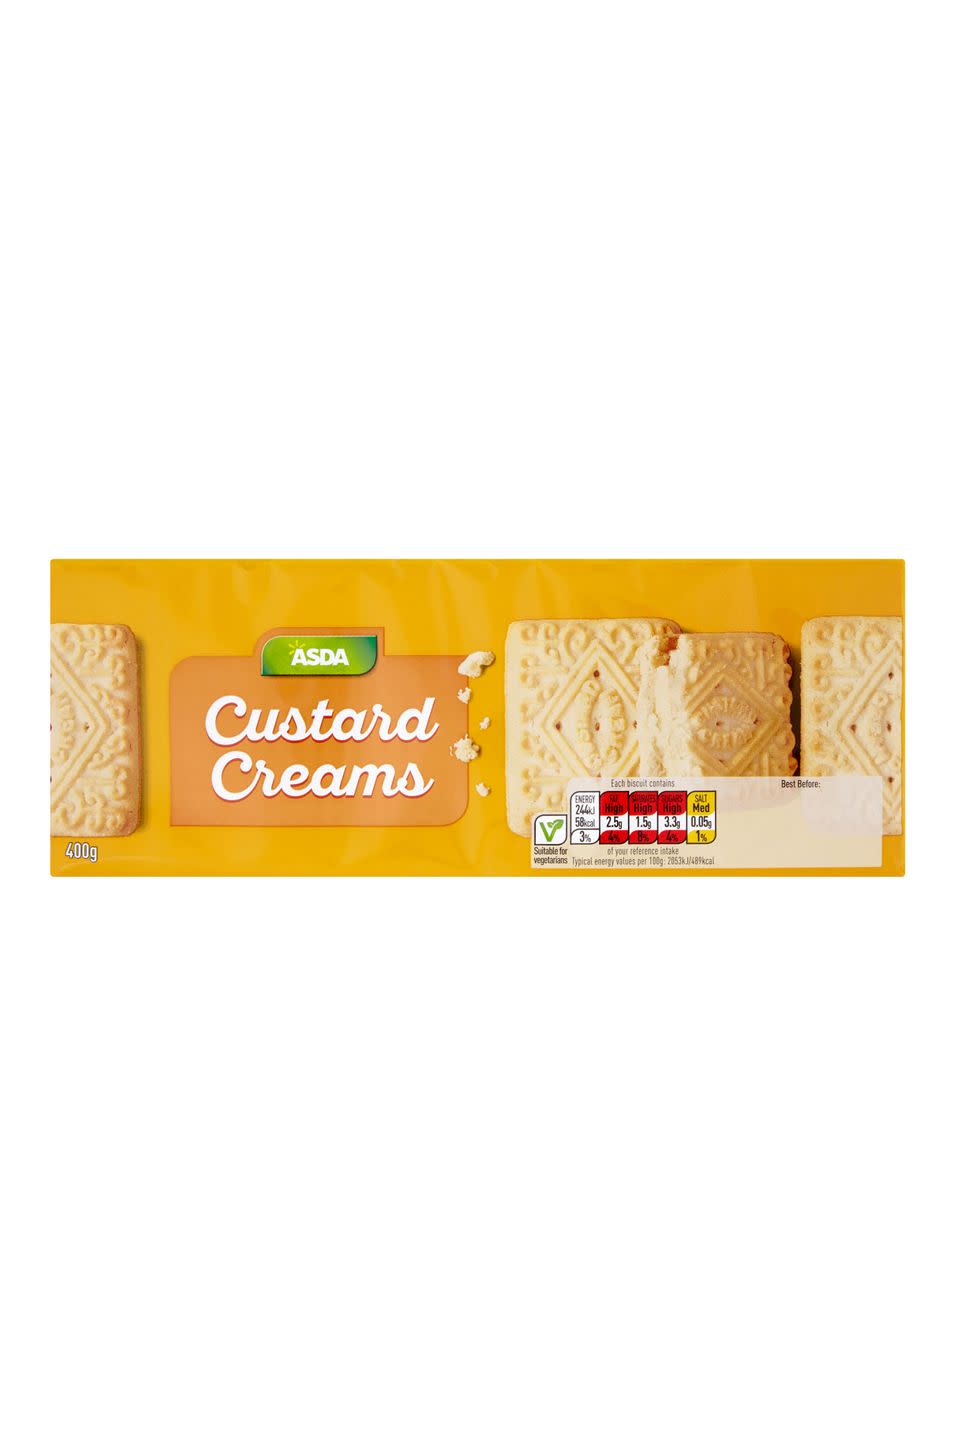 4) ASDA Custard Creams